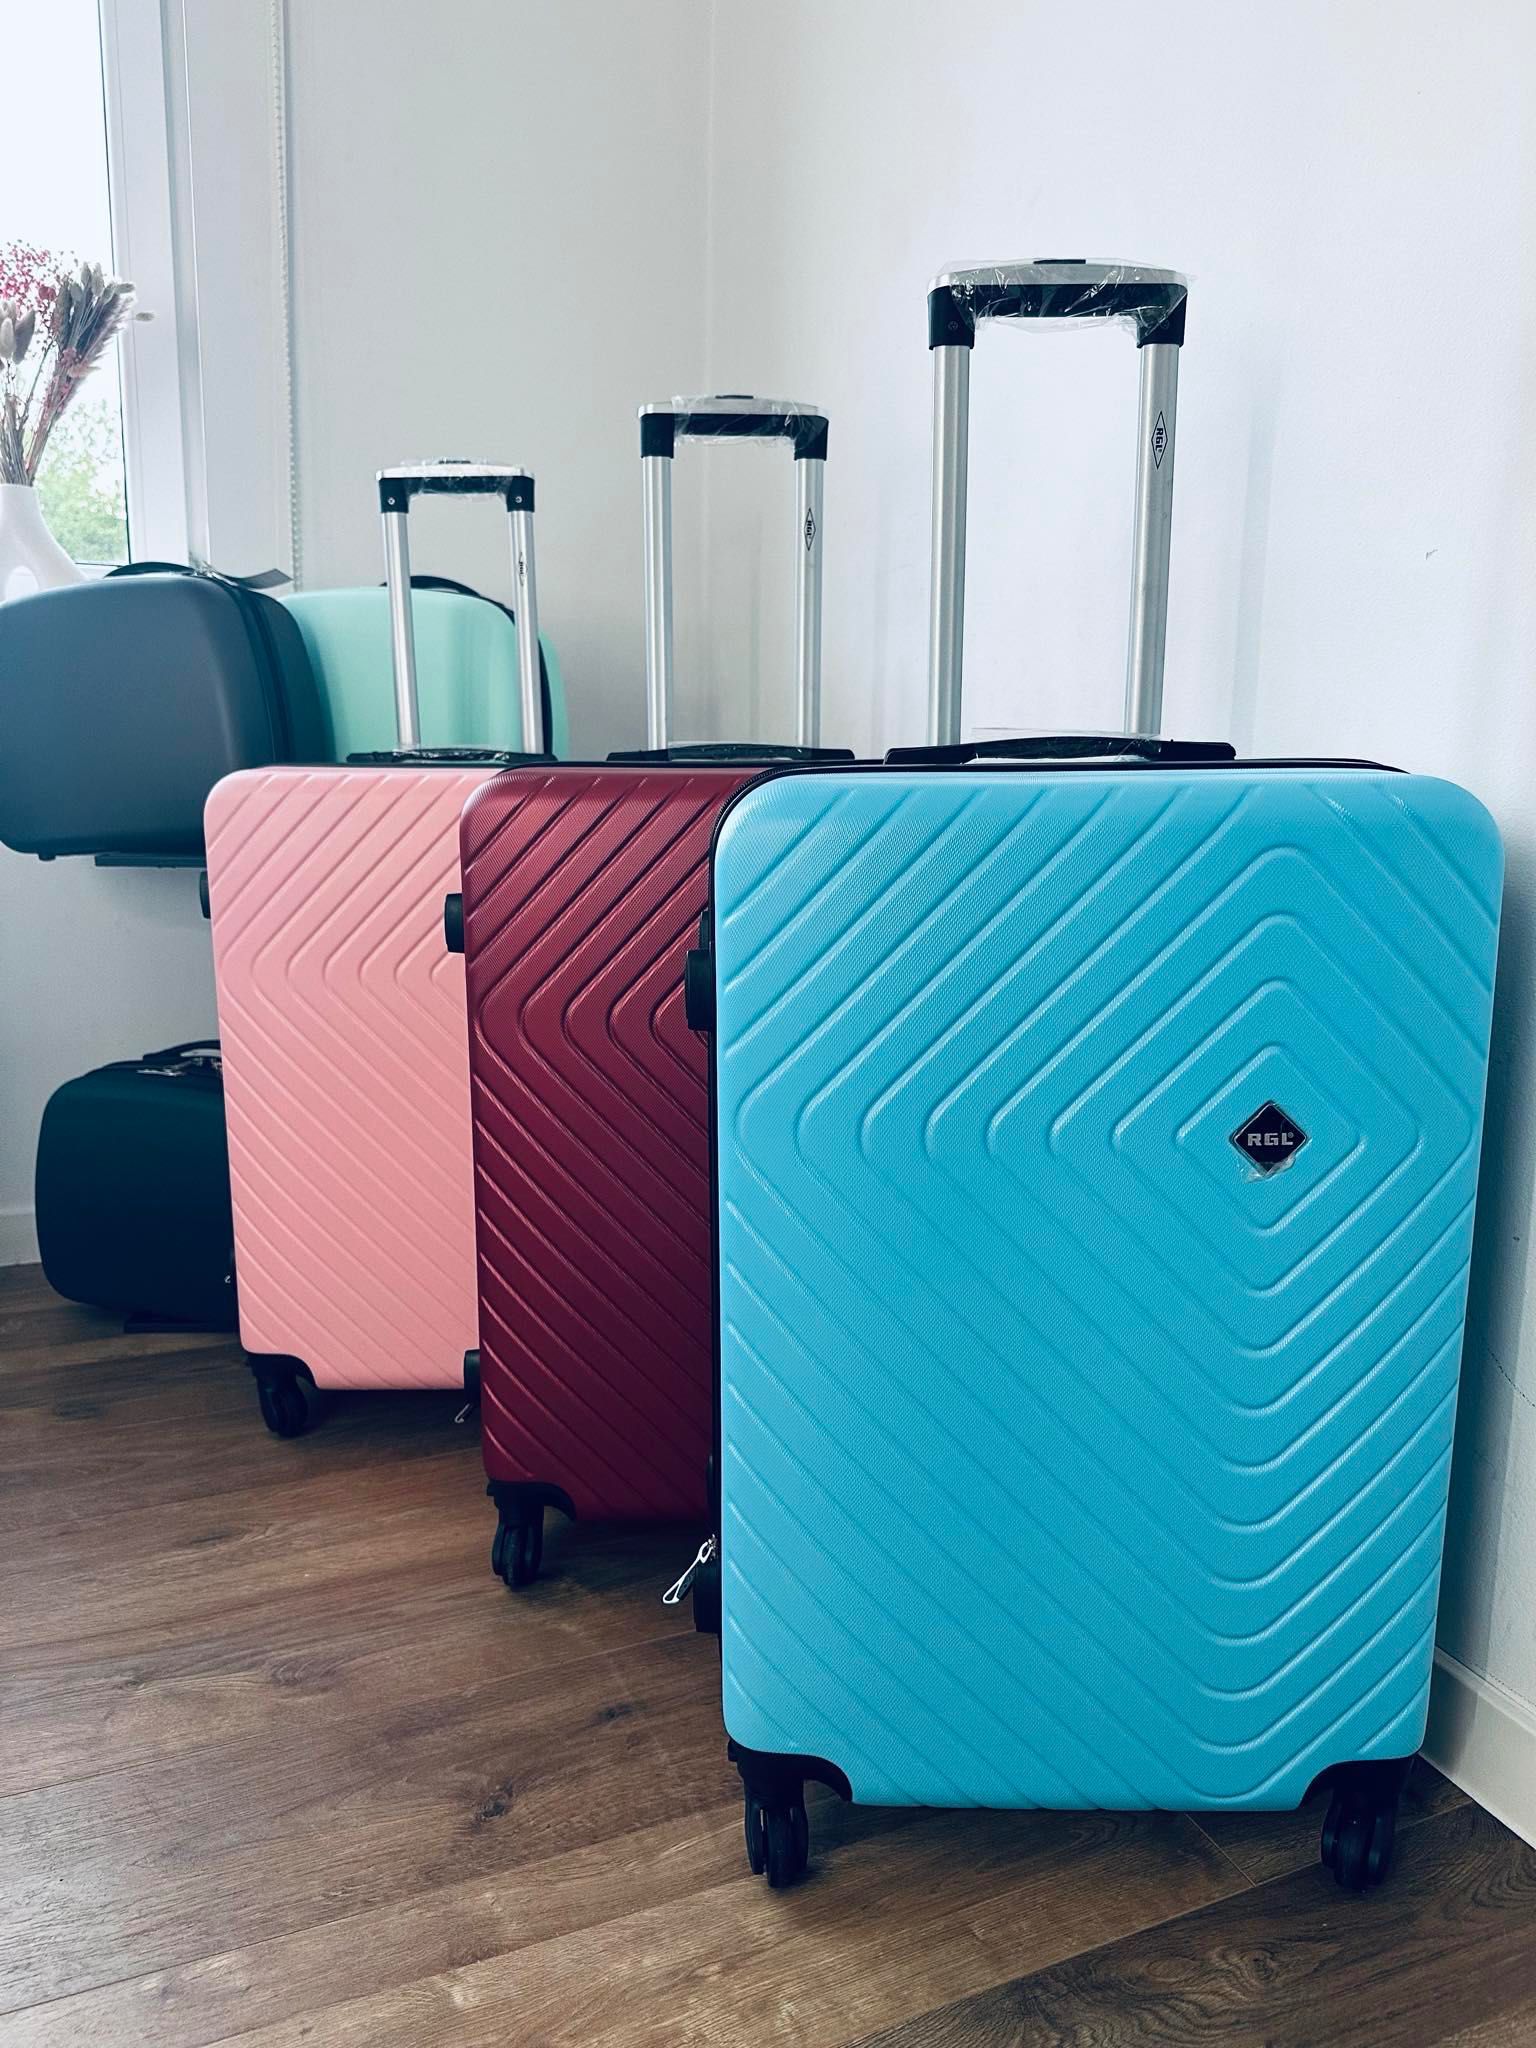 nowa super walizka średnia 20 kg, bagaż rejestrowany, walizki